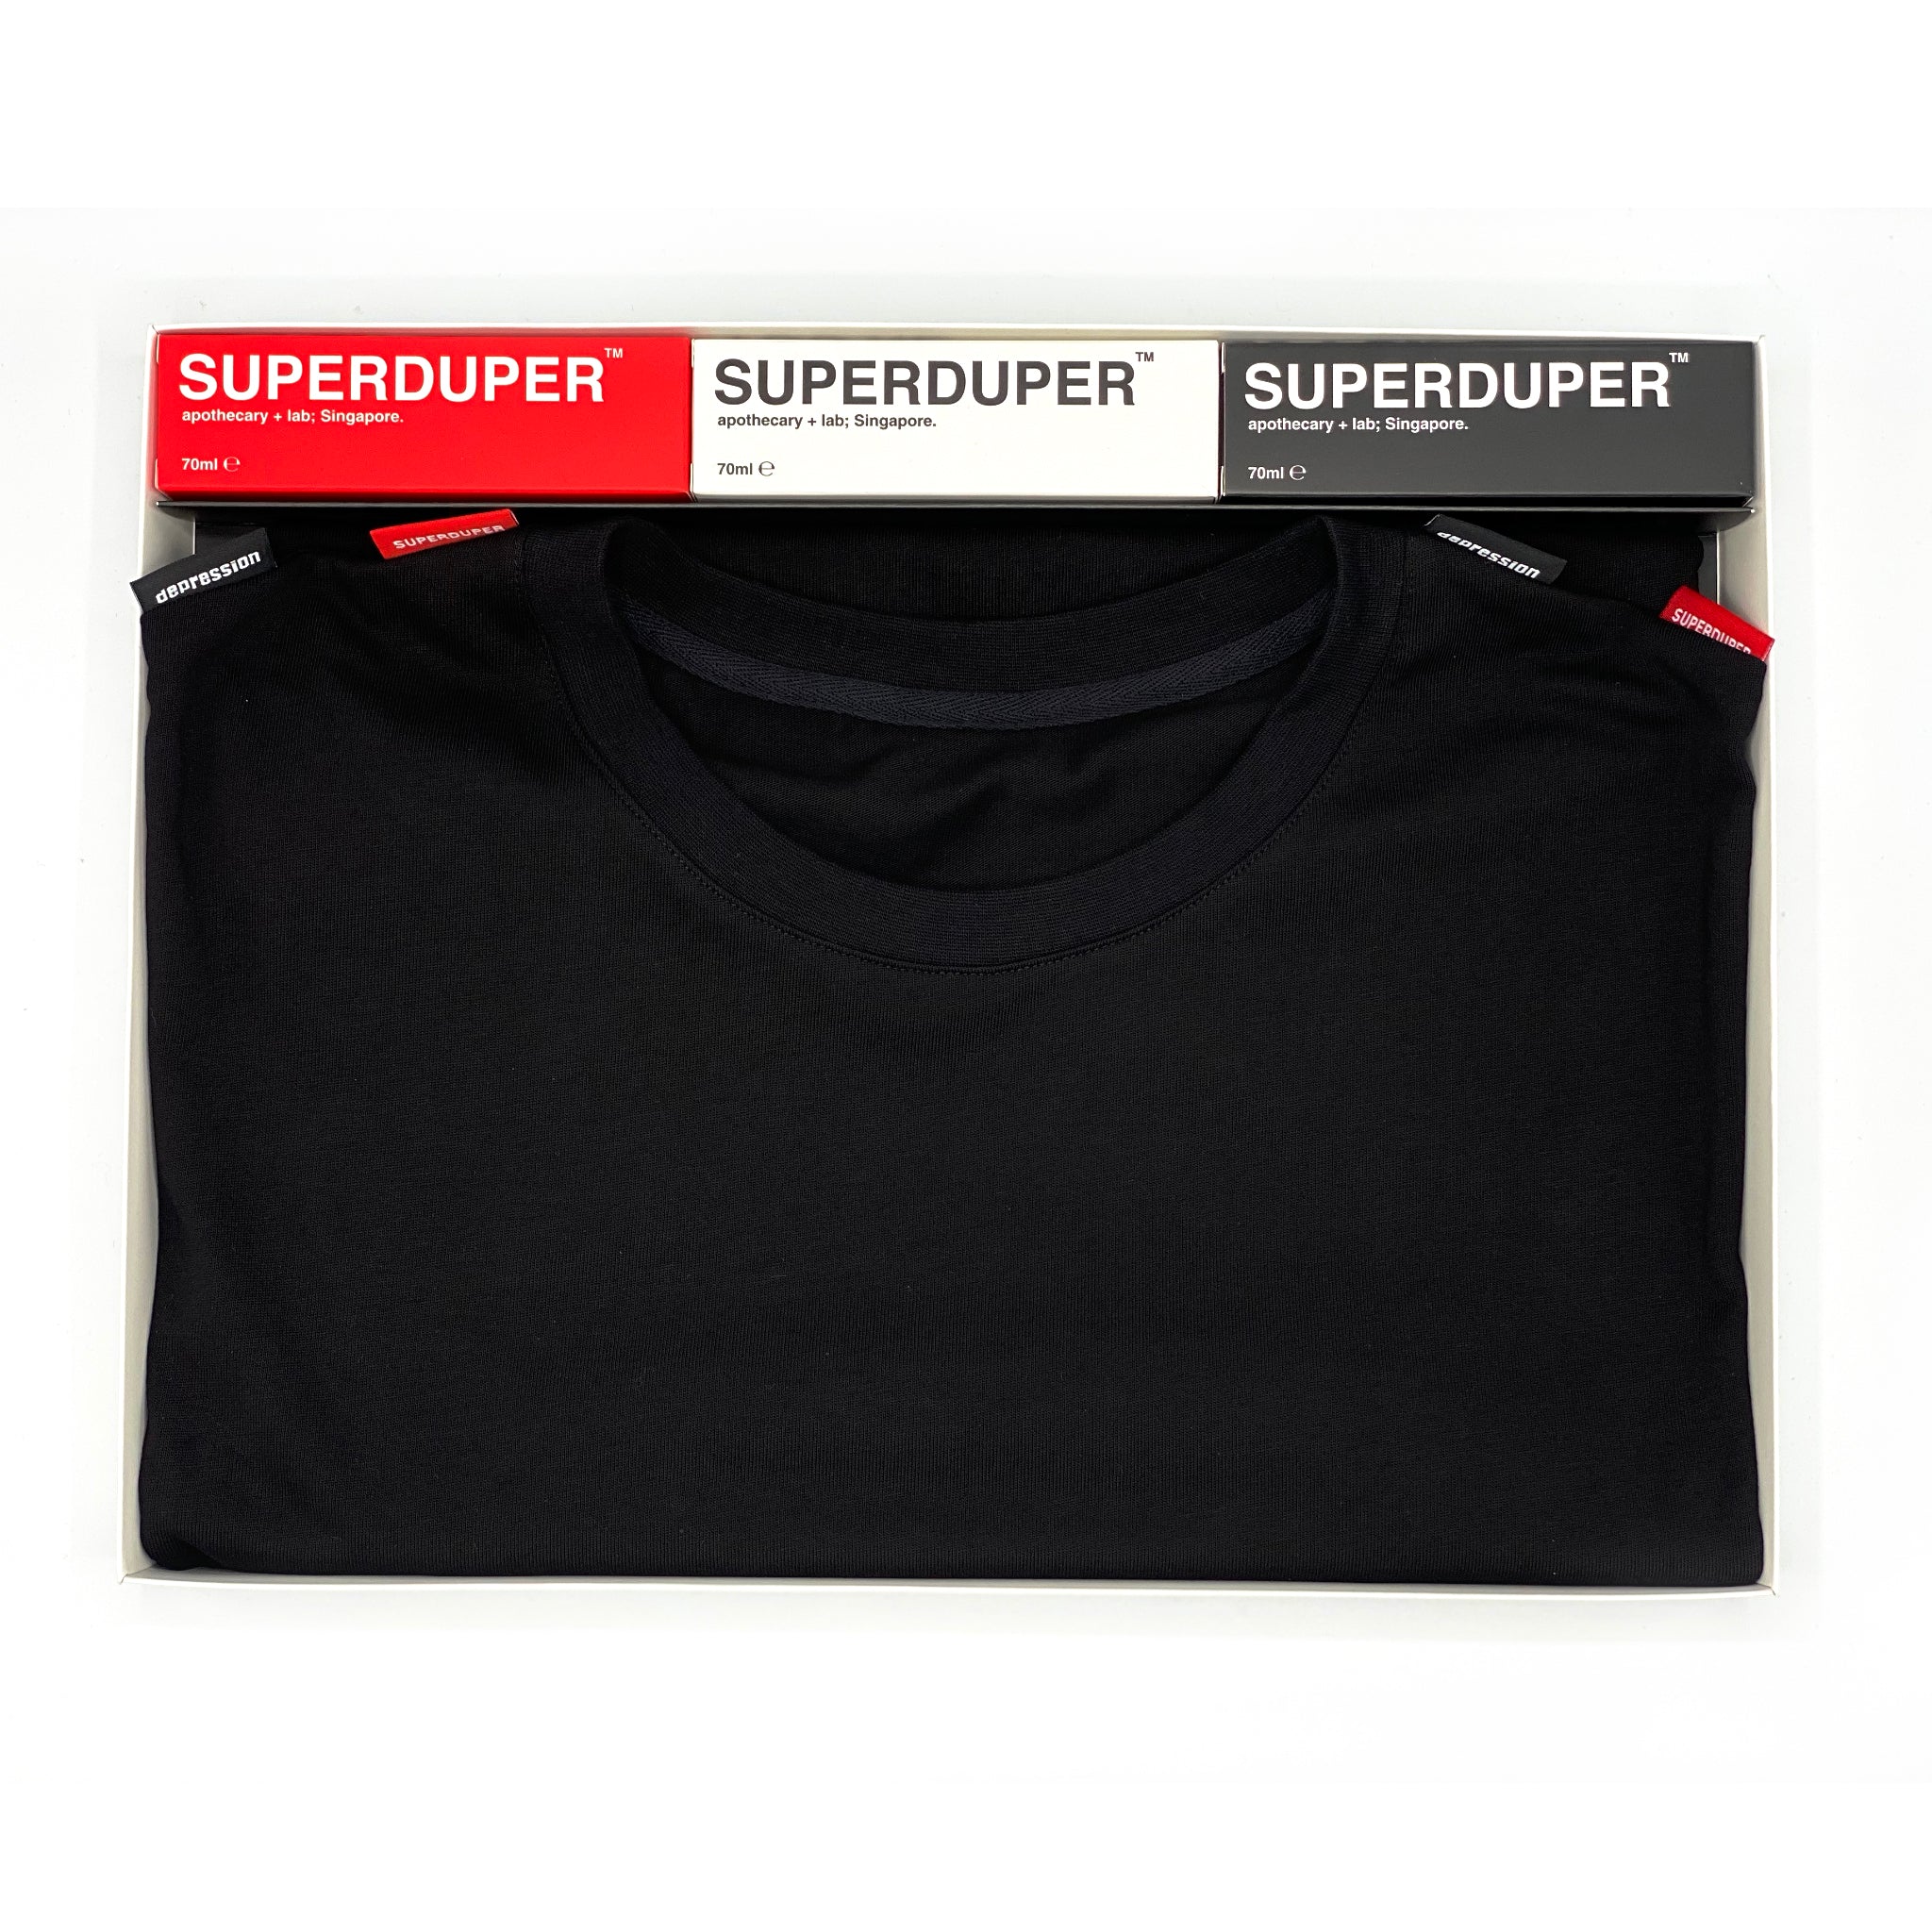 SUPERDUPER x DEPRESSION Box Set